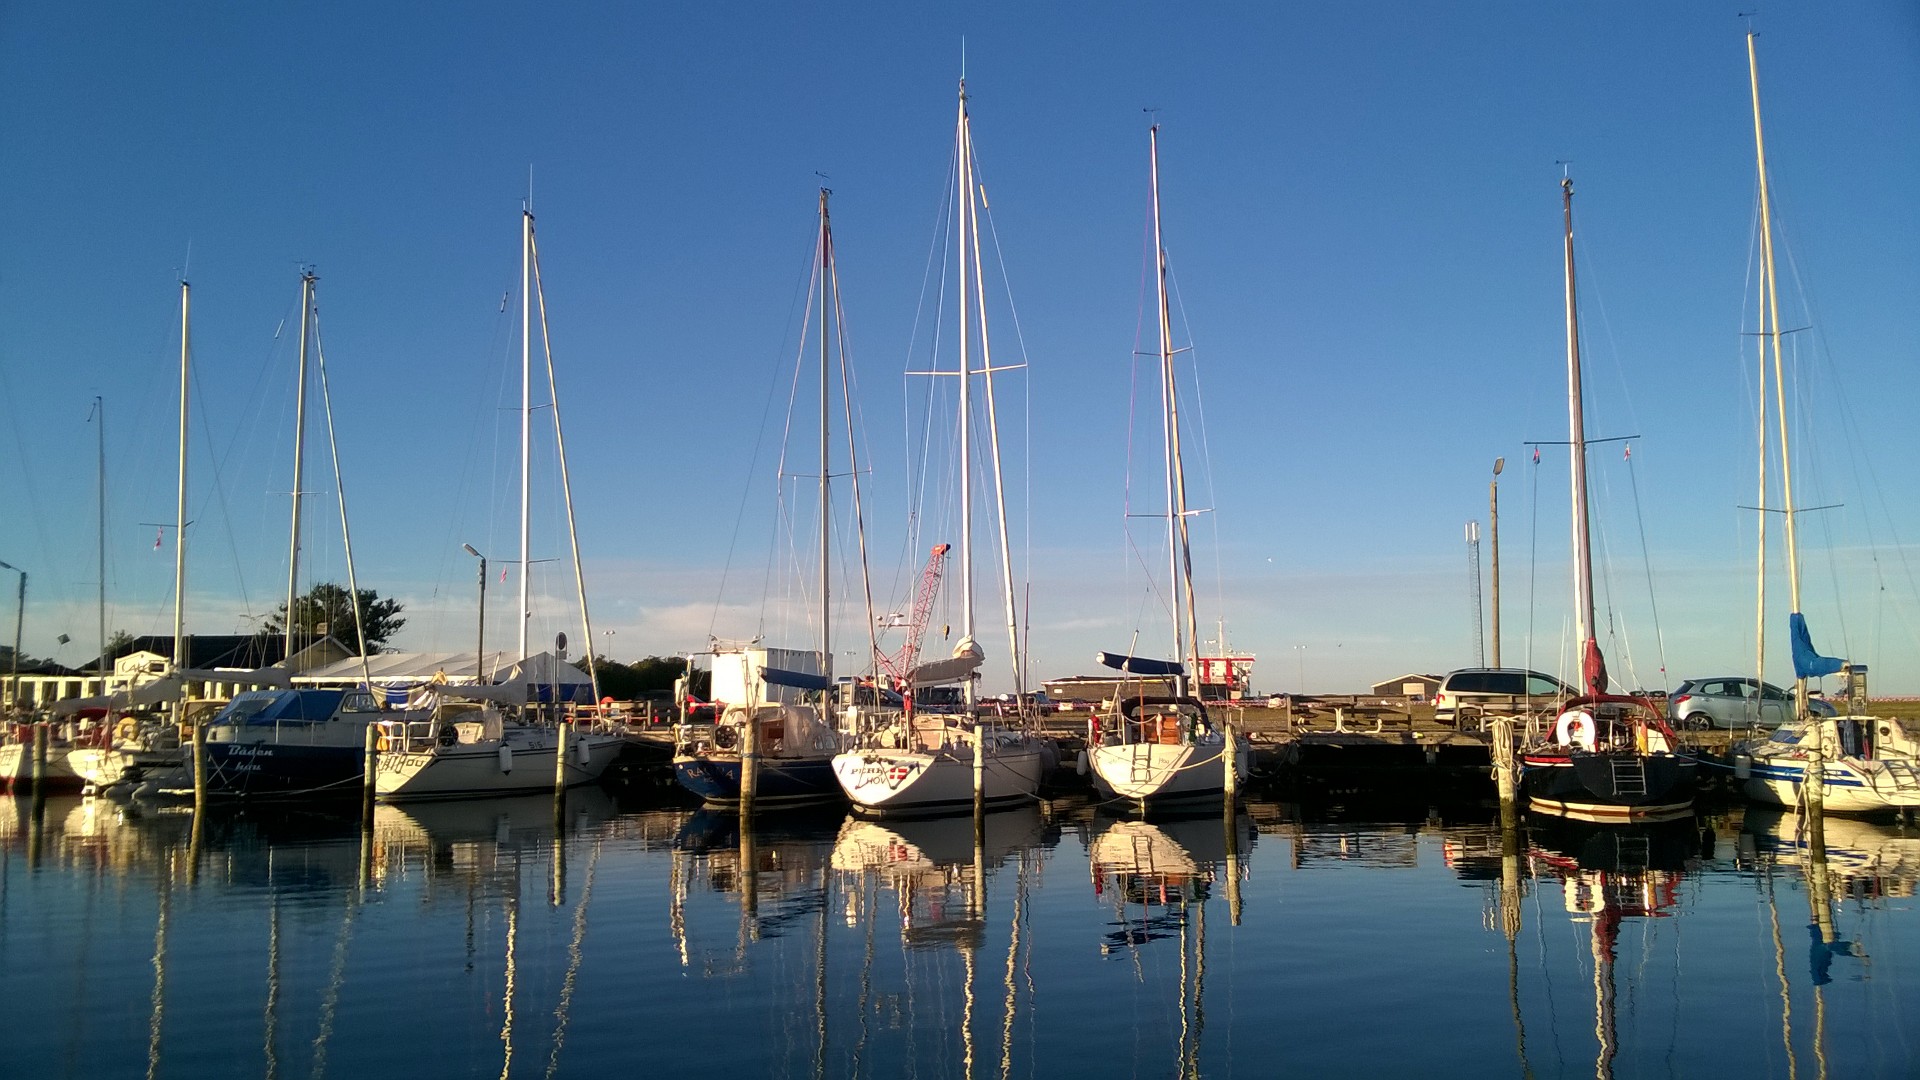 Her ses Hou Lystbådehavn, der ligger syd for Aarhus. Foto: Troels Lykke